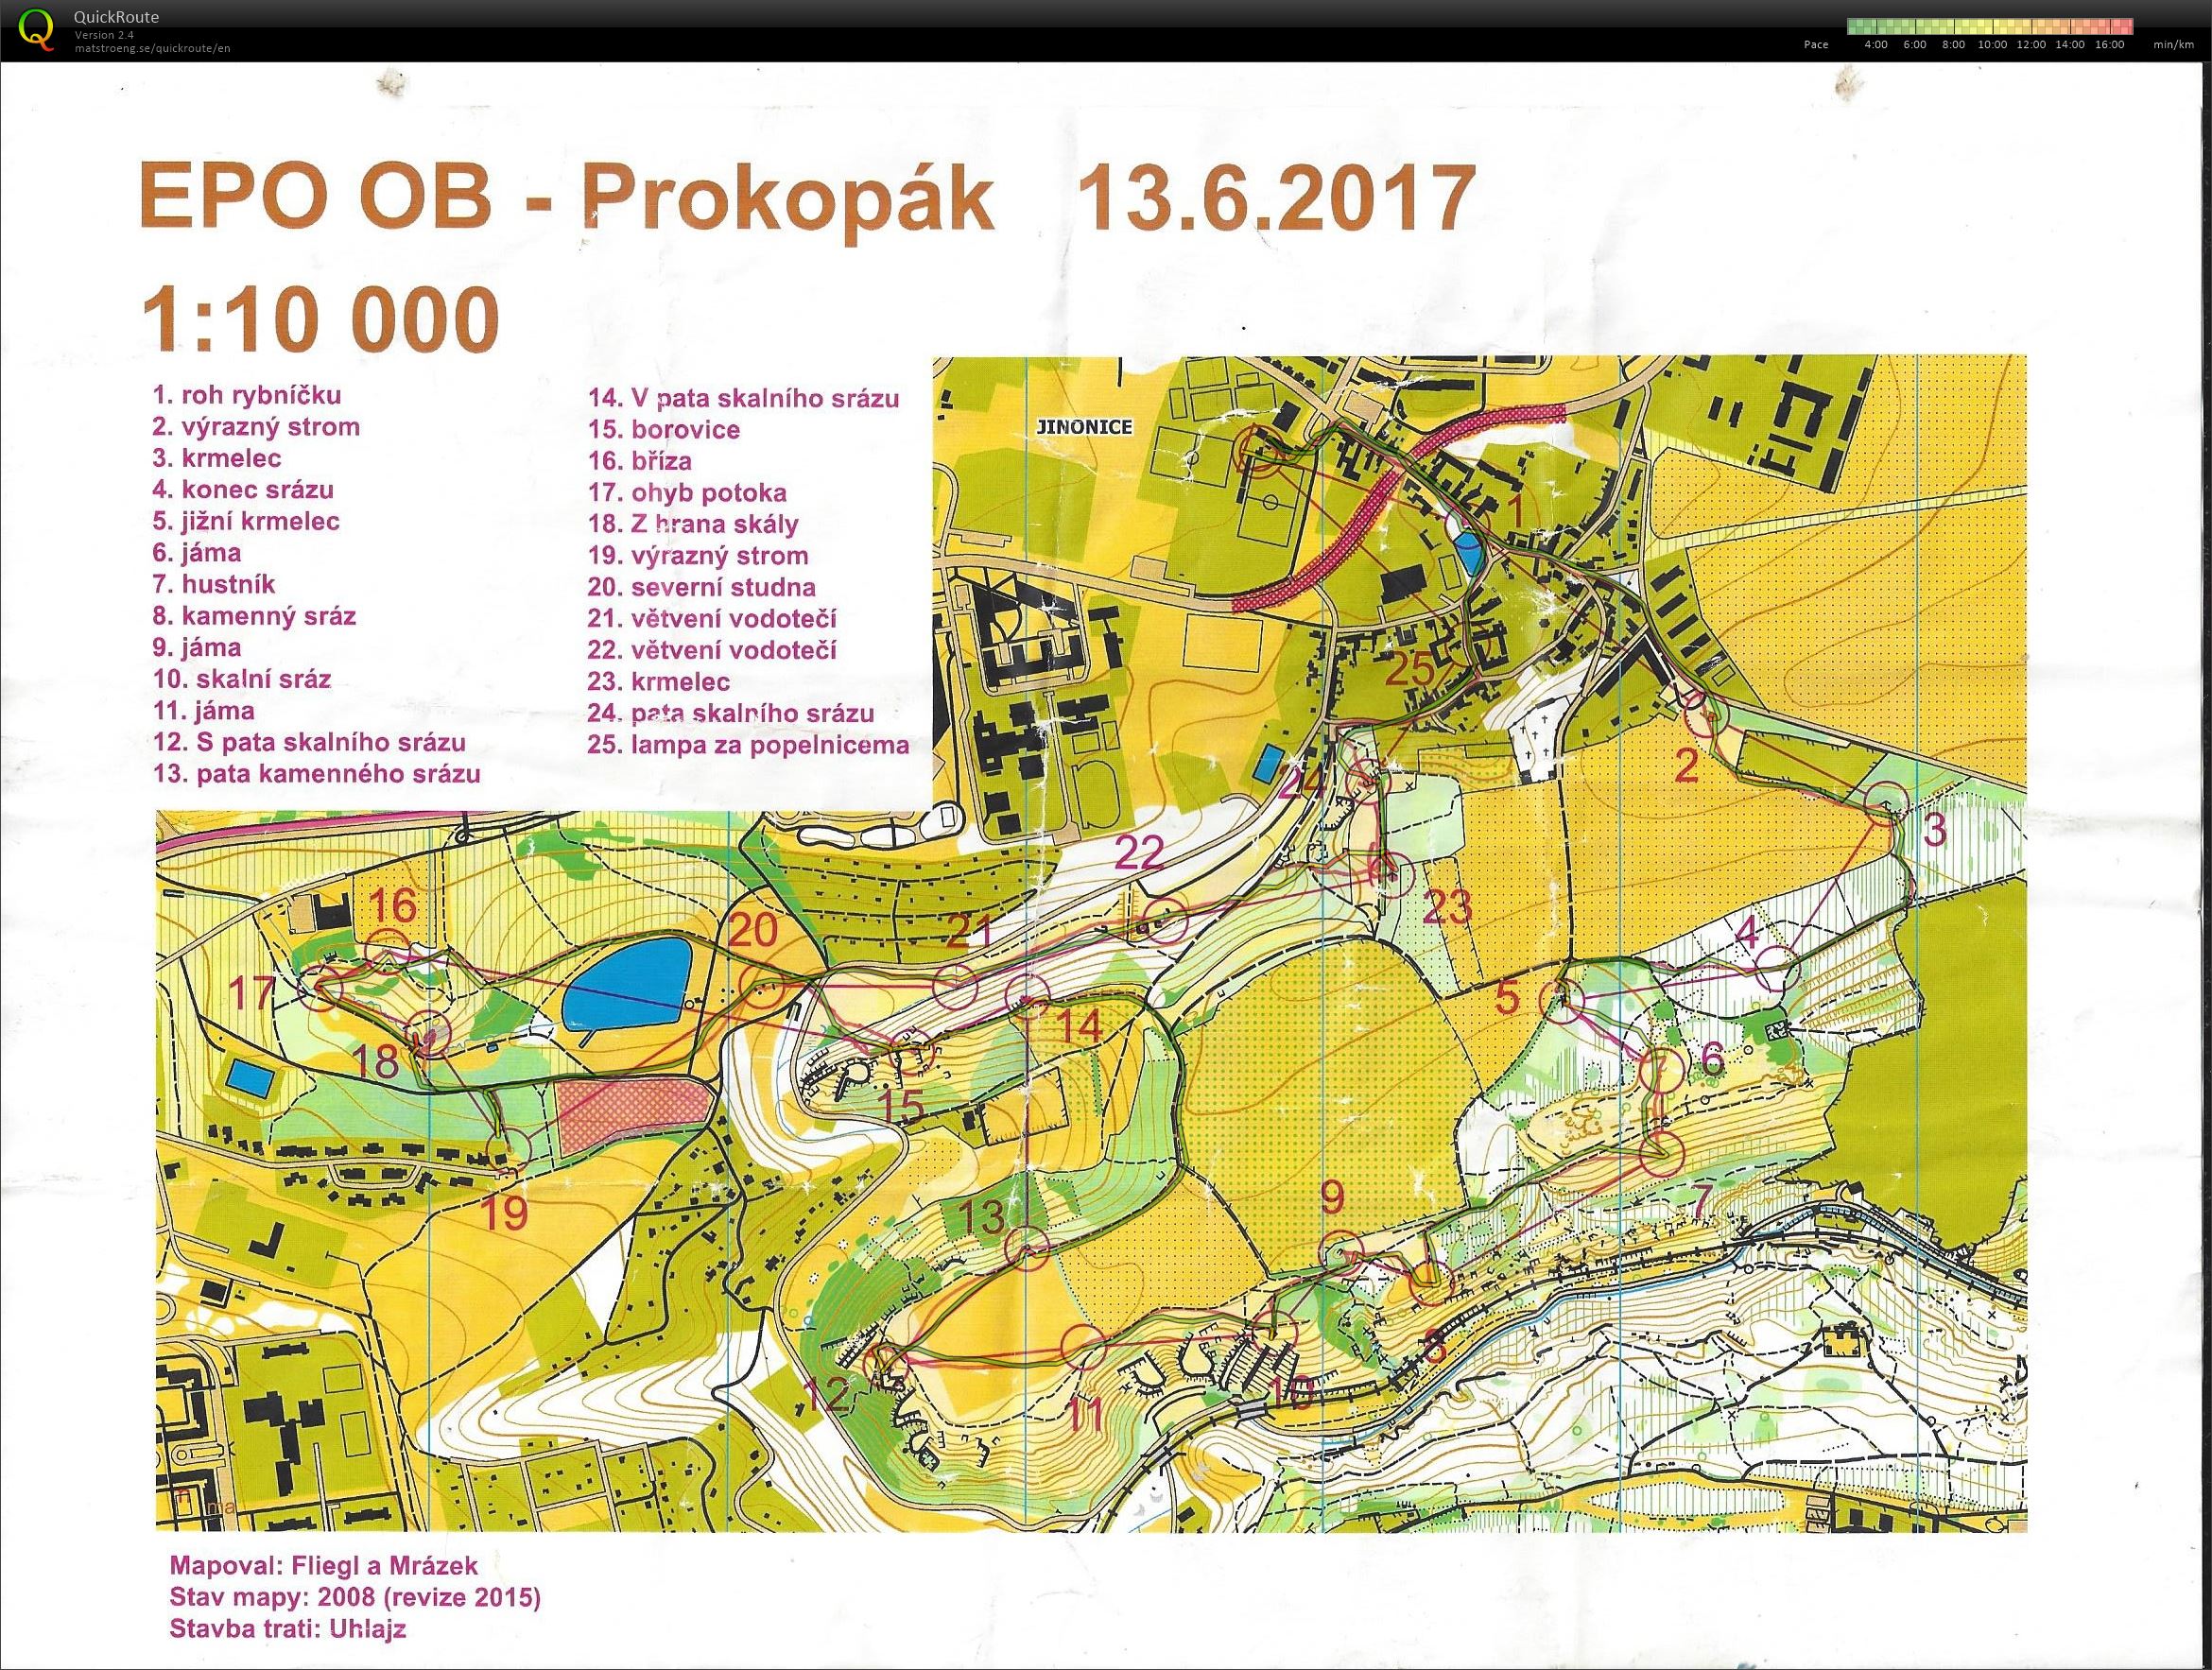 EPO OB - Prokopák (13-06-2017)